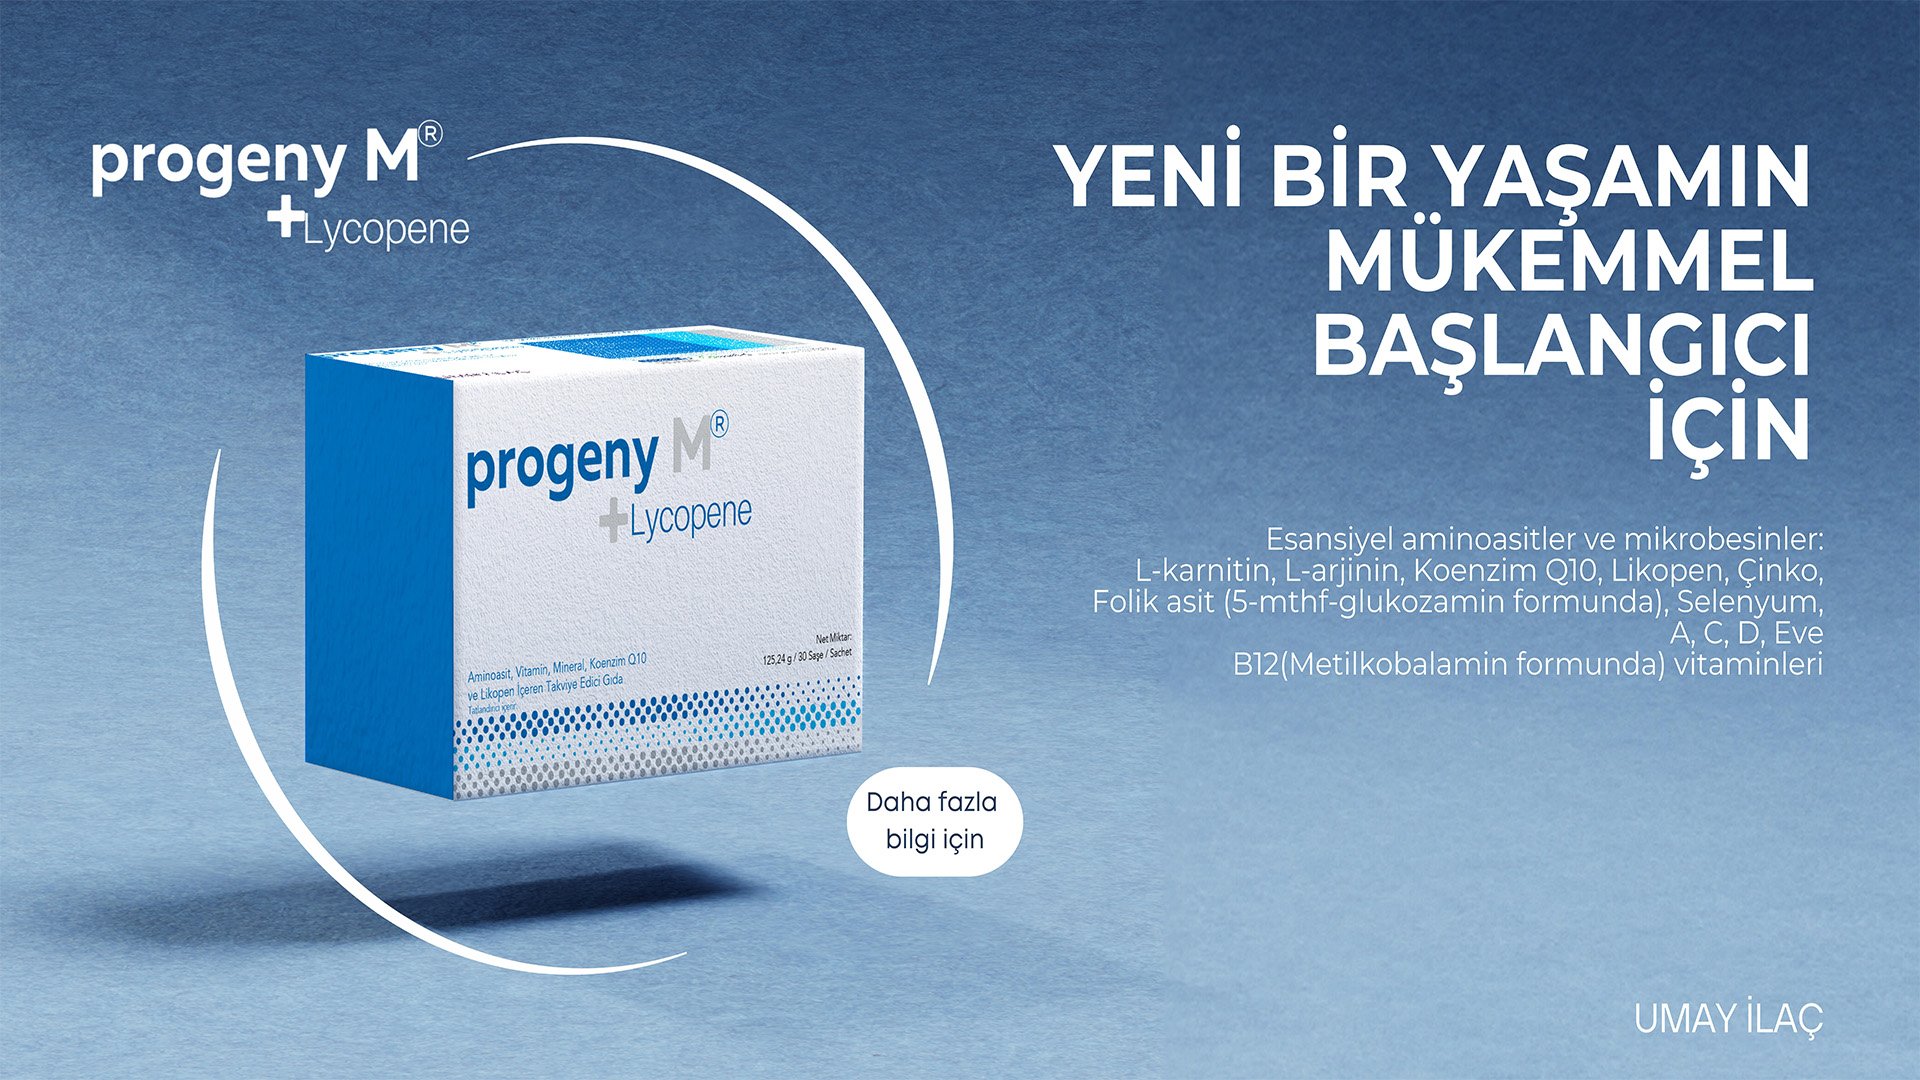                Progeny M+Lycopene